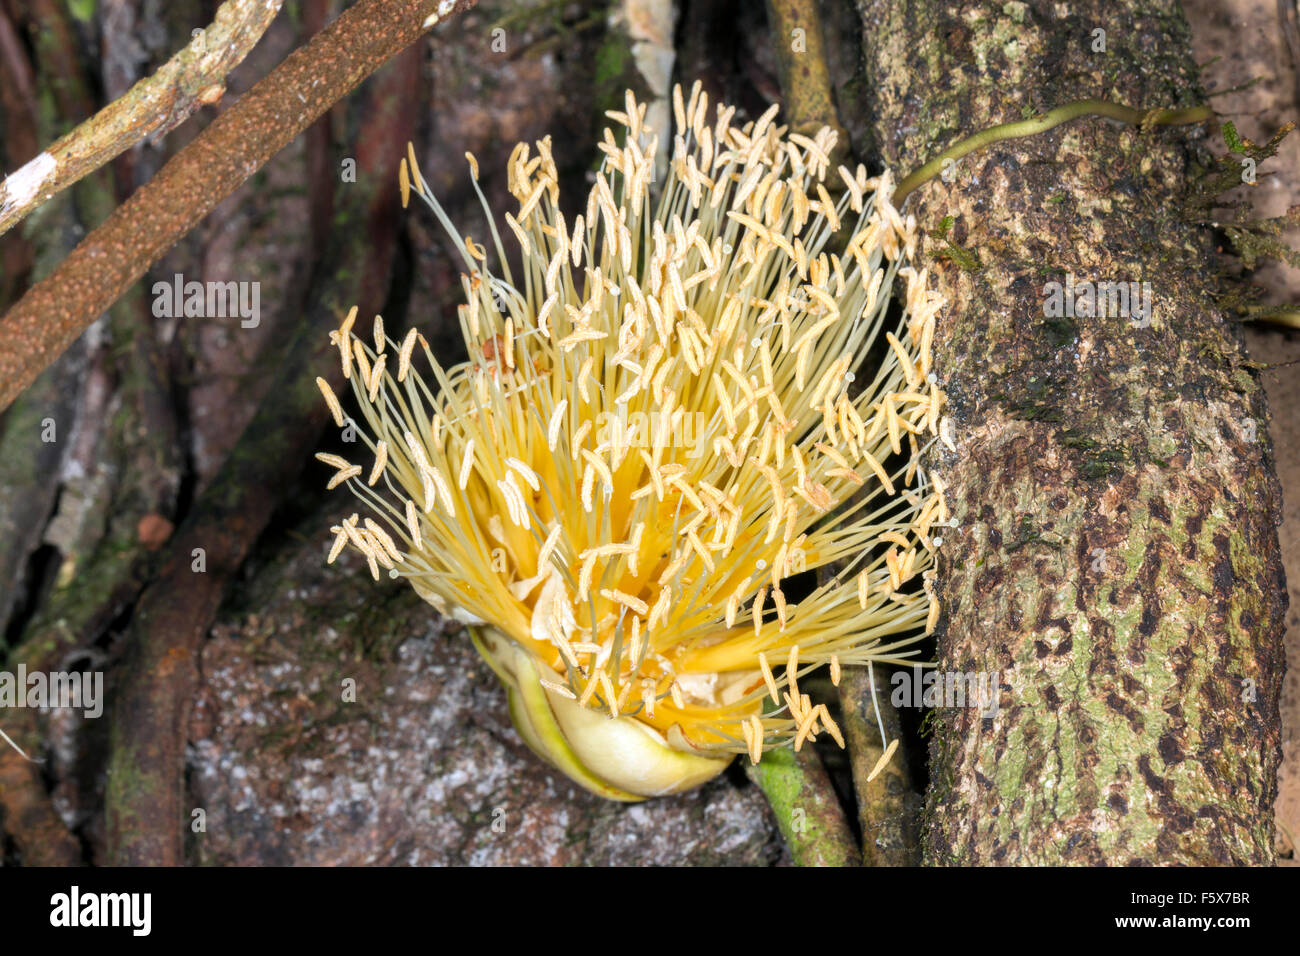 Fioritura liana che cresce su un tronco di albero nella foresta pluviale in Amazzonia ecuadoriana. Un fiore maschile compresa di stami. Foto Stock